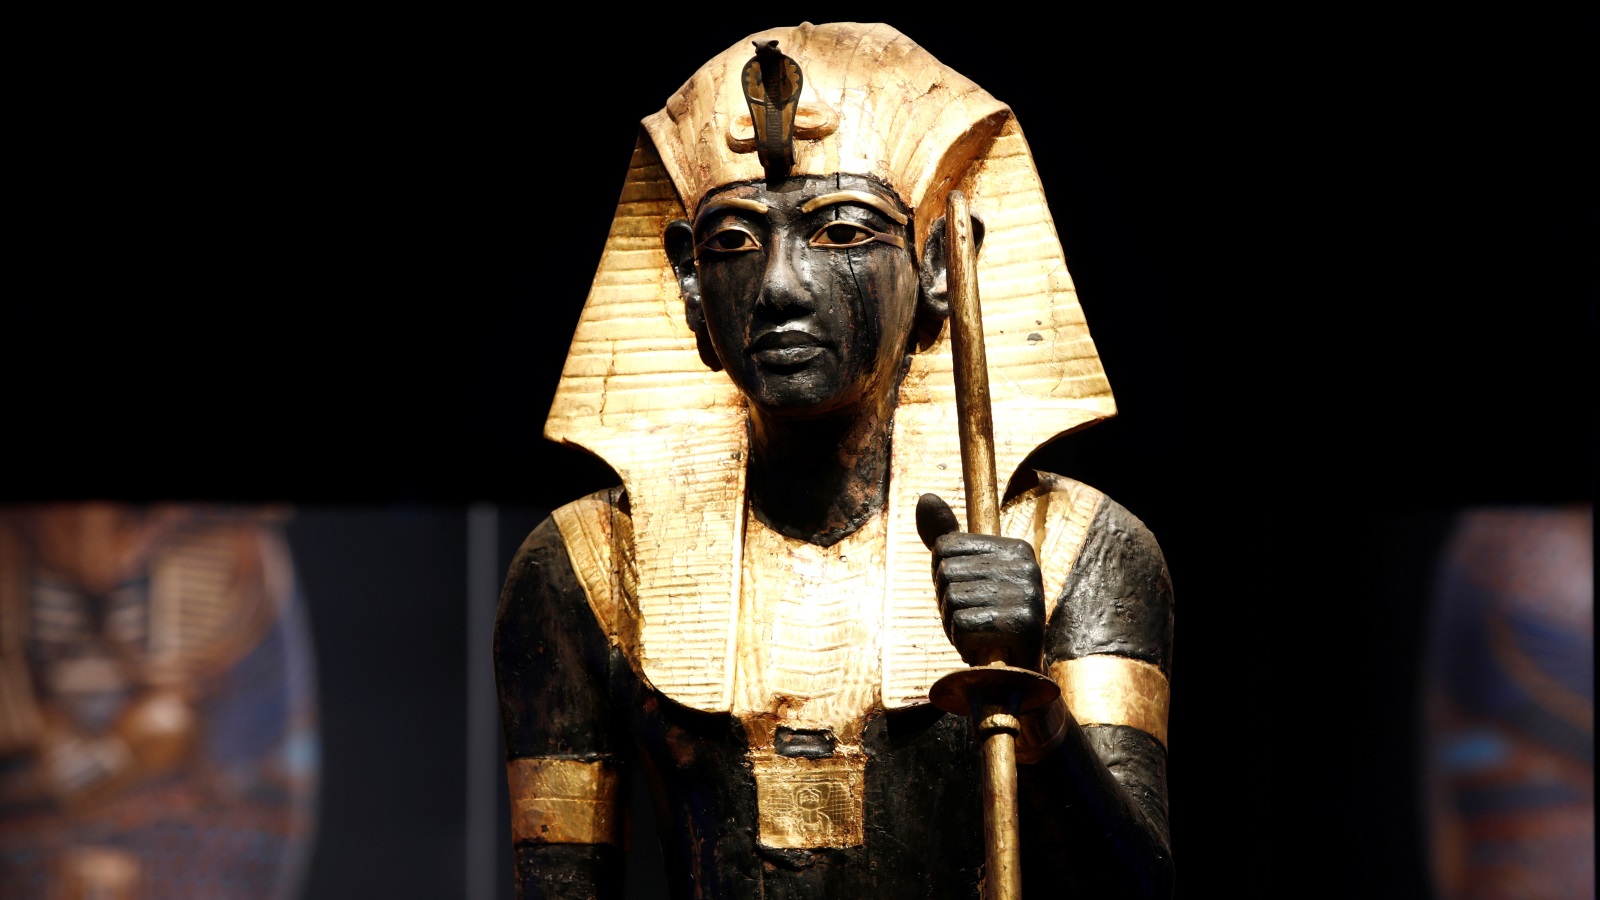 يعود استخدام الزجاج الأصفر بالزخرفة إلى عهد الفرعون توت عنخ آمون (رويترز)